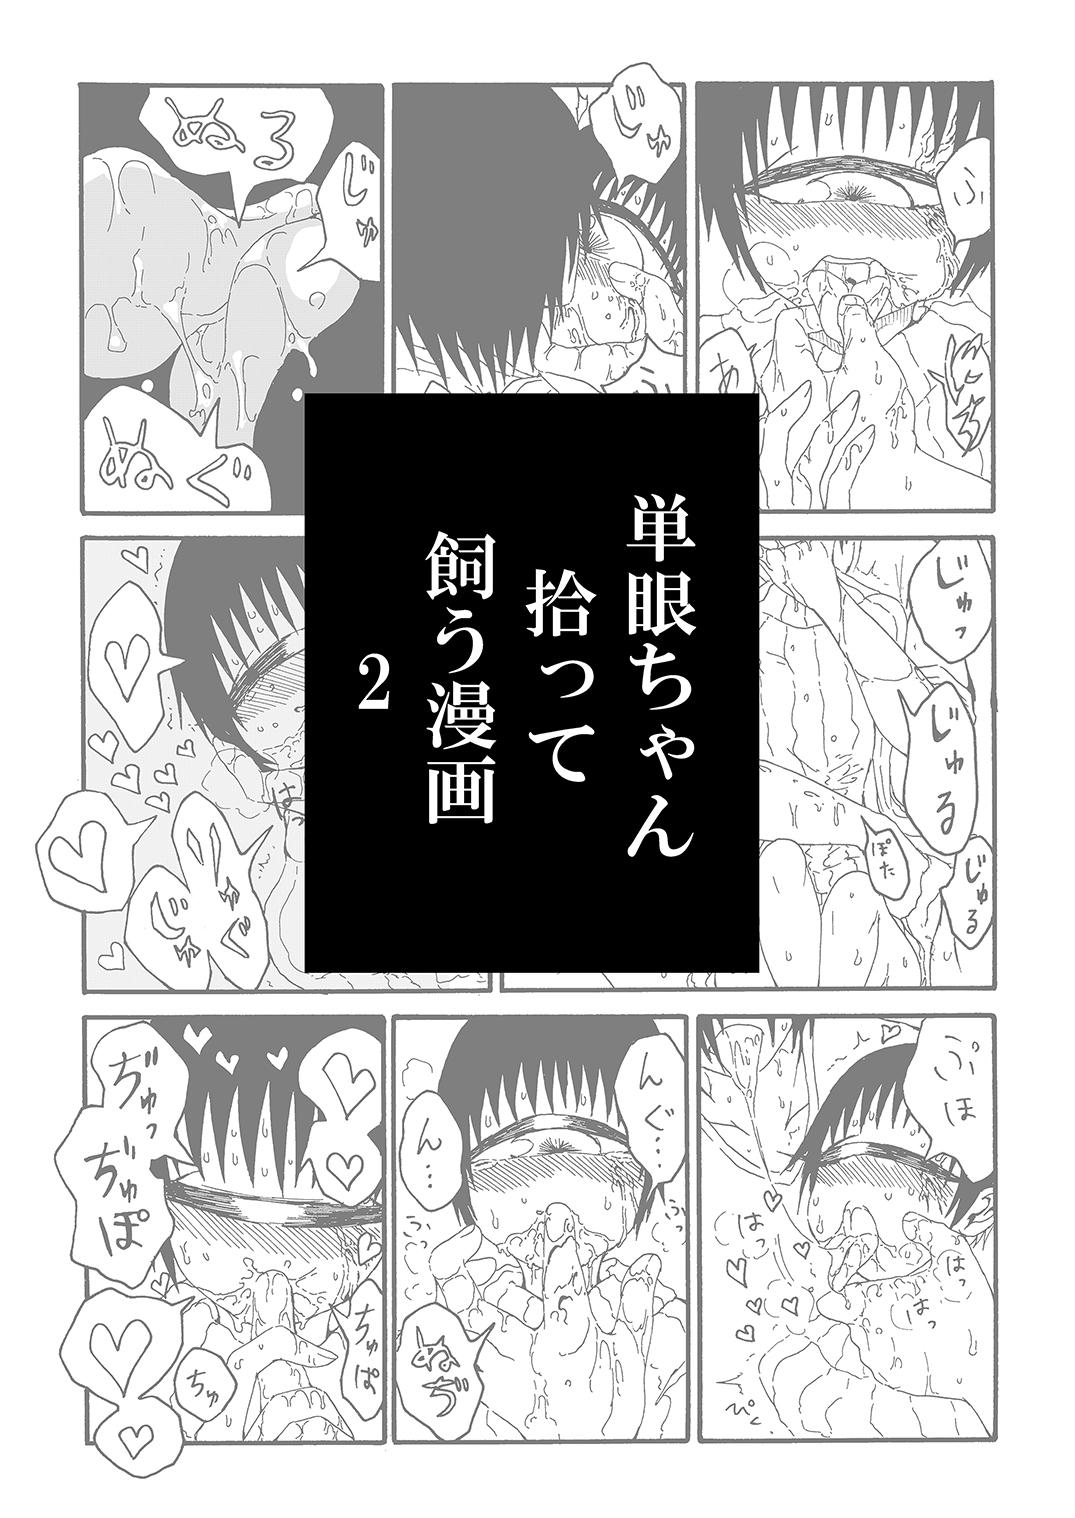 Homemade Tangan-chan Hirotte Kau Manga 2 Gag - Page 3